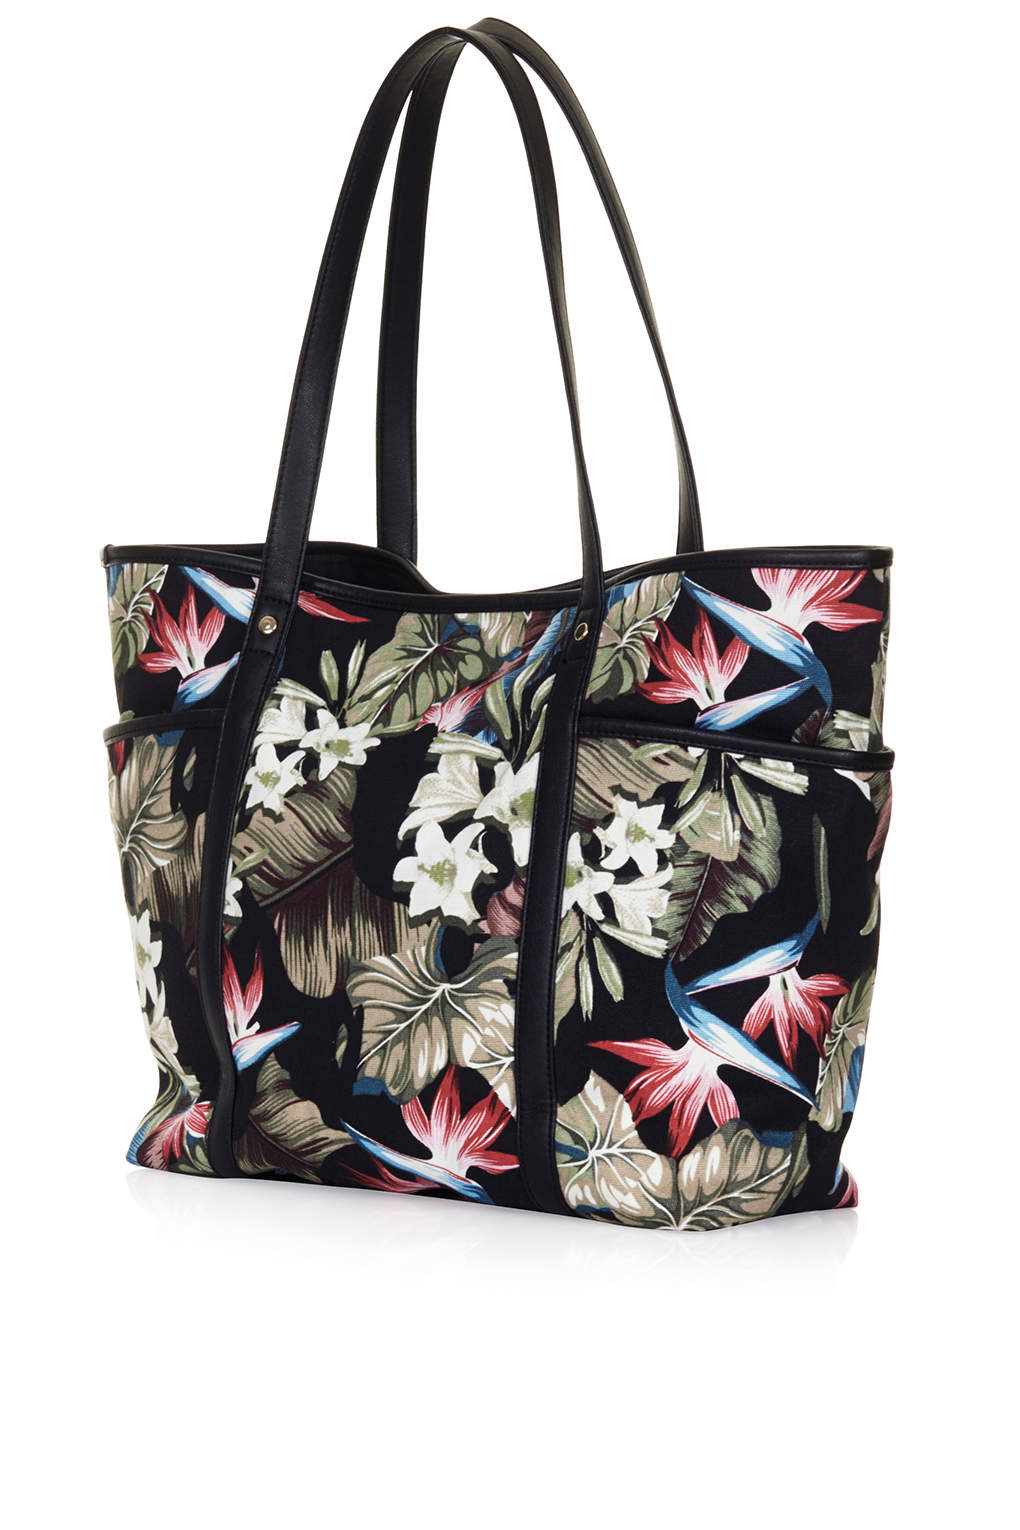 TOPSHOP Floral Printed Tote Bag in Black - Lyst